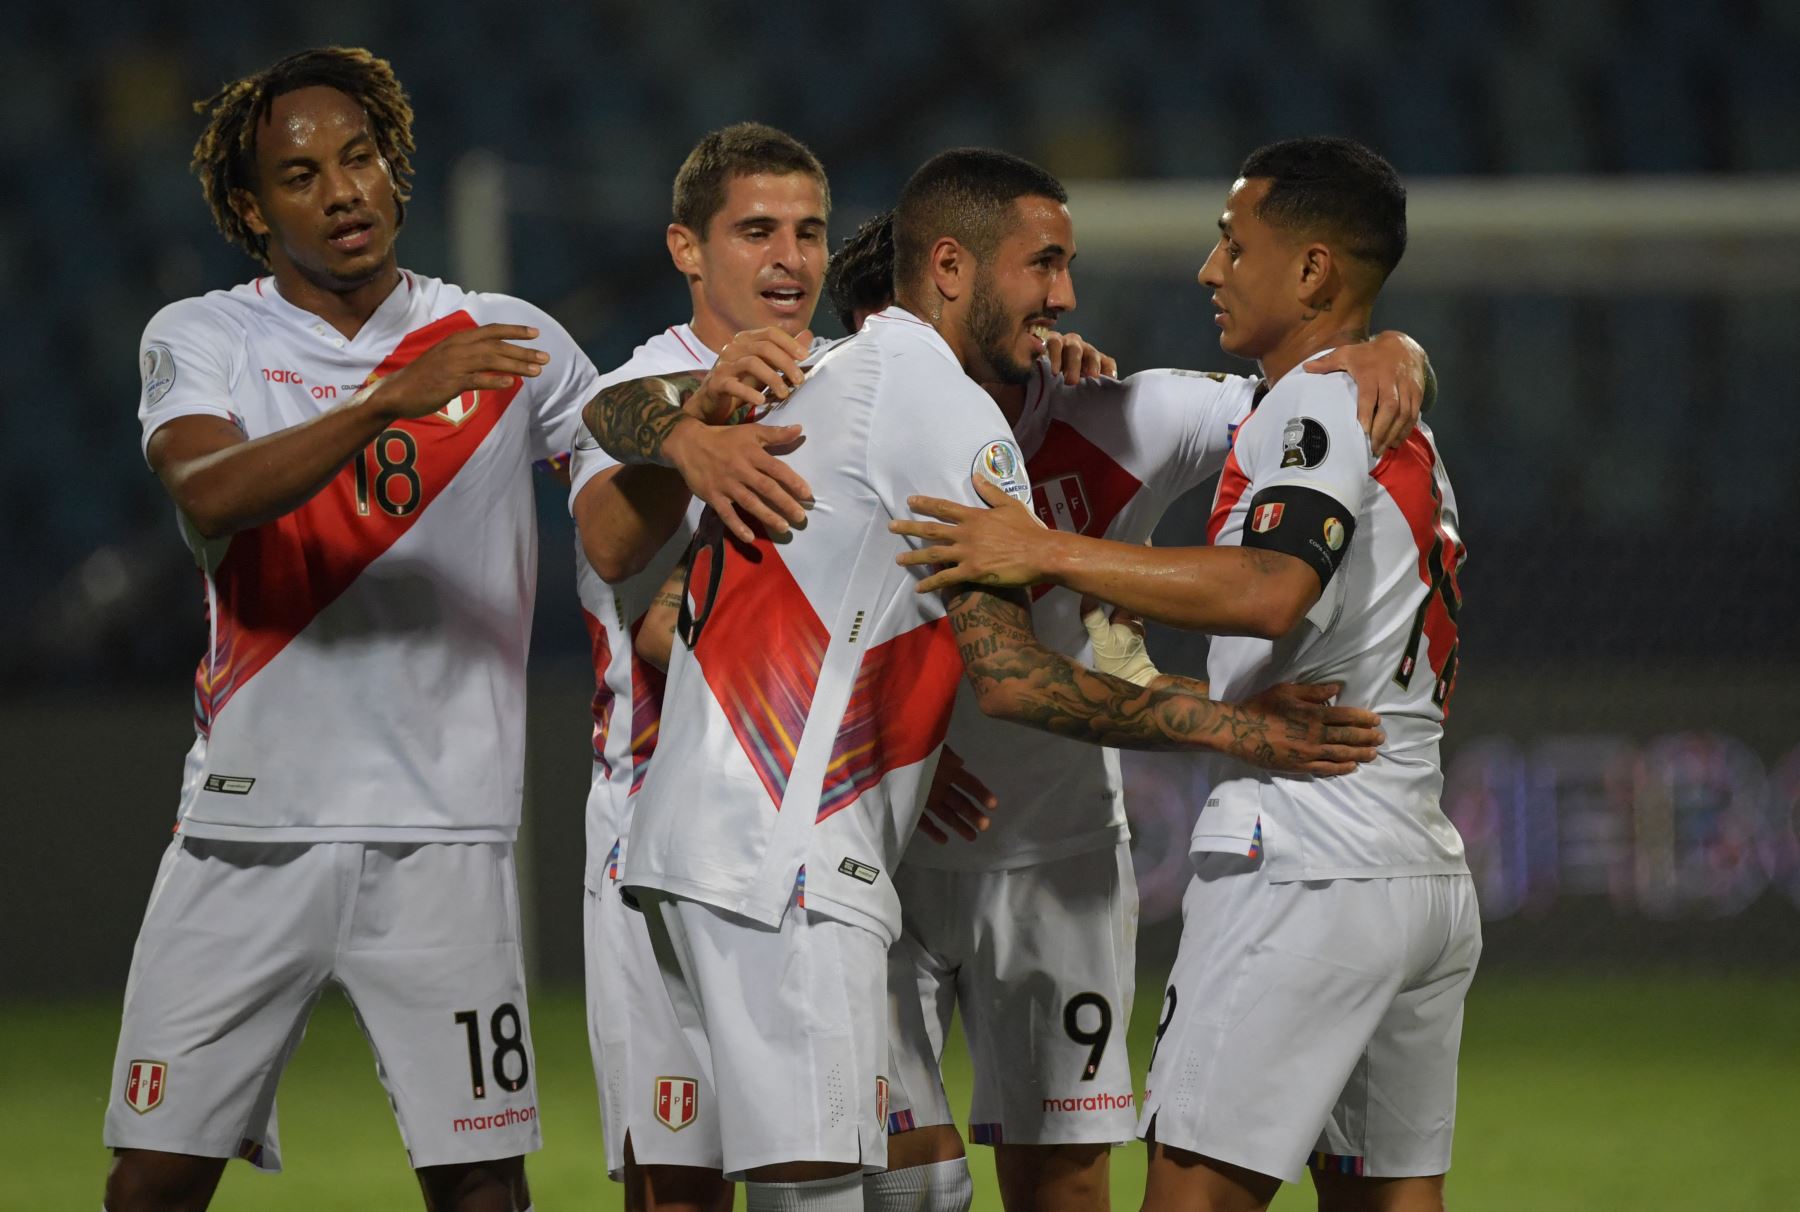 El peruano Sergio Peña (2-R) celebra con sus compañeros de equipo tras anotar contra Colombia durante el partido de la fase de grupos del torneo de fútbol Conmebol Copa América 2021 en el Estadio Olímpico de Goiania, Brasil. Foto: AFP